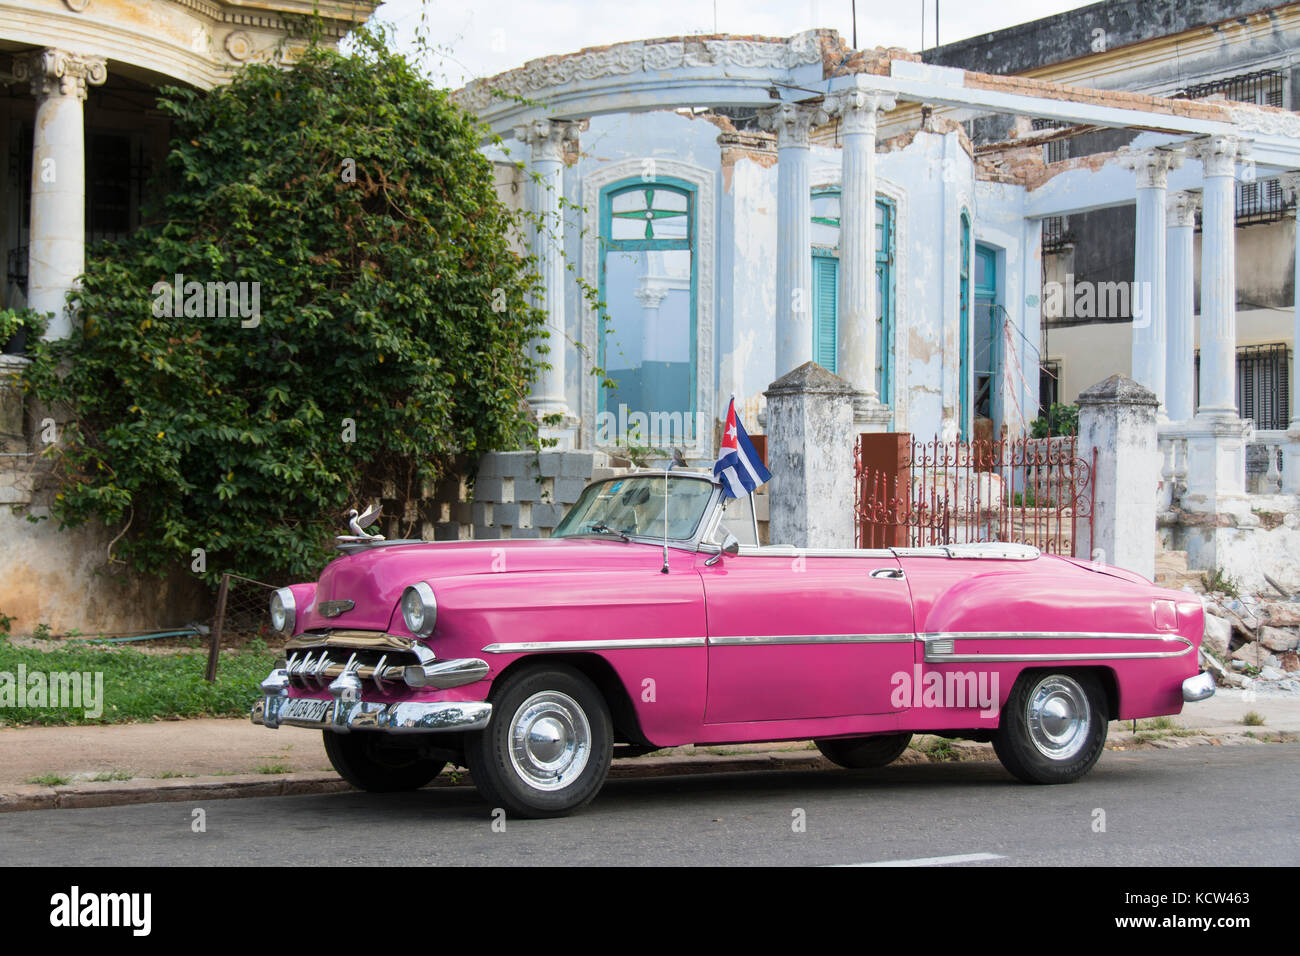 Verfallende Mansion, Klassische amerikanische Wagen, Vedado, Havanna, Kuba Stockfoto